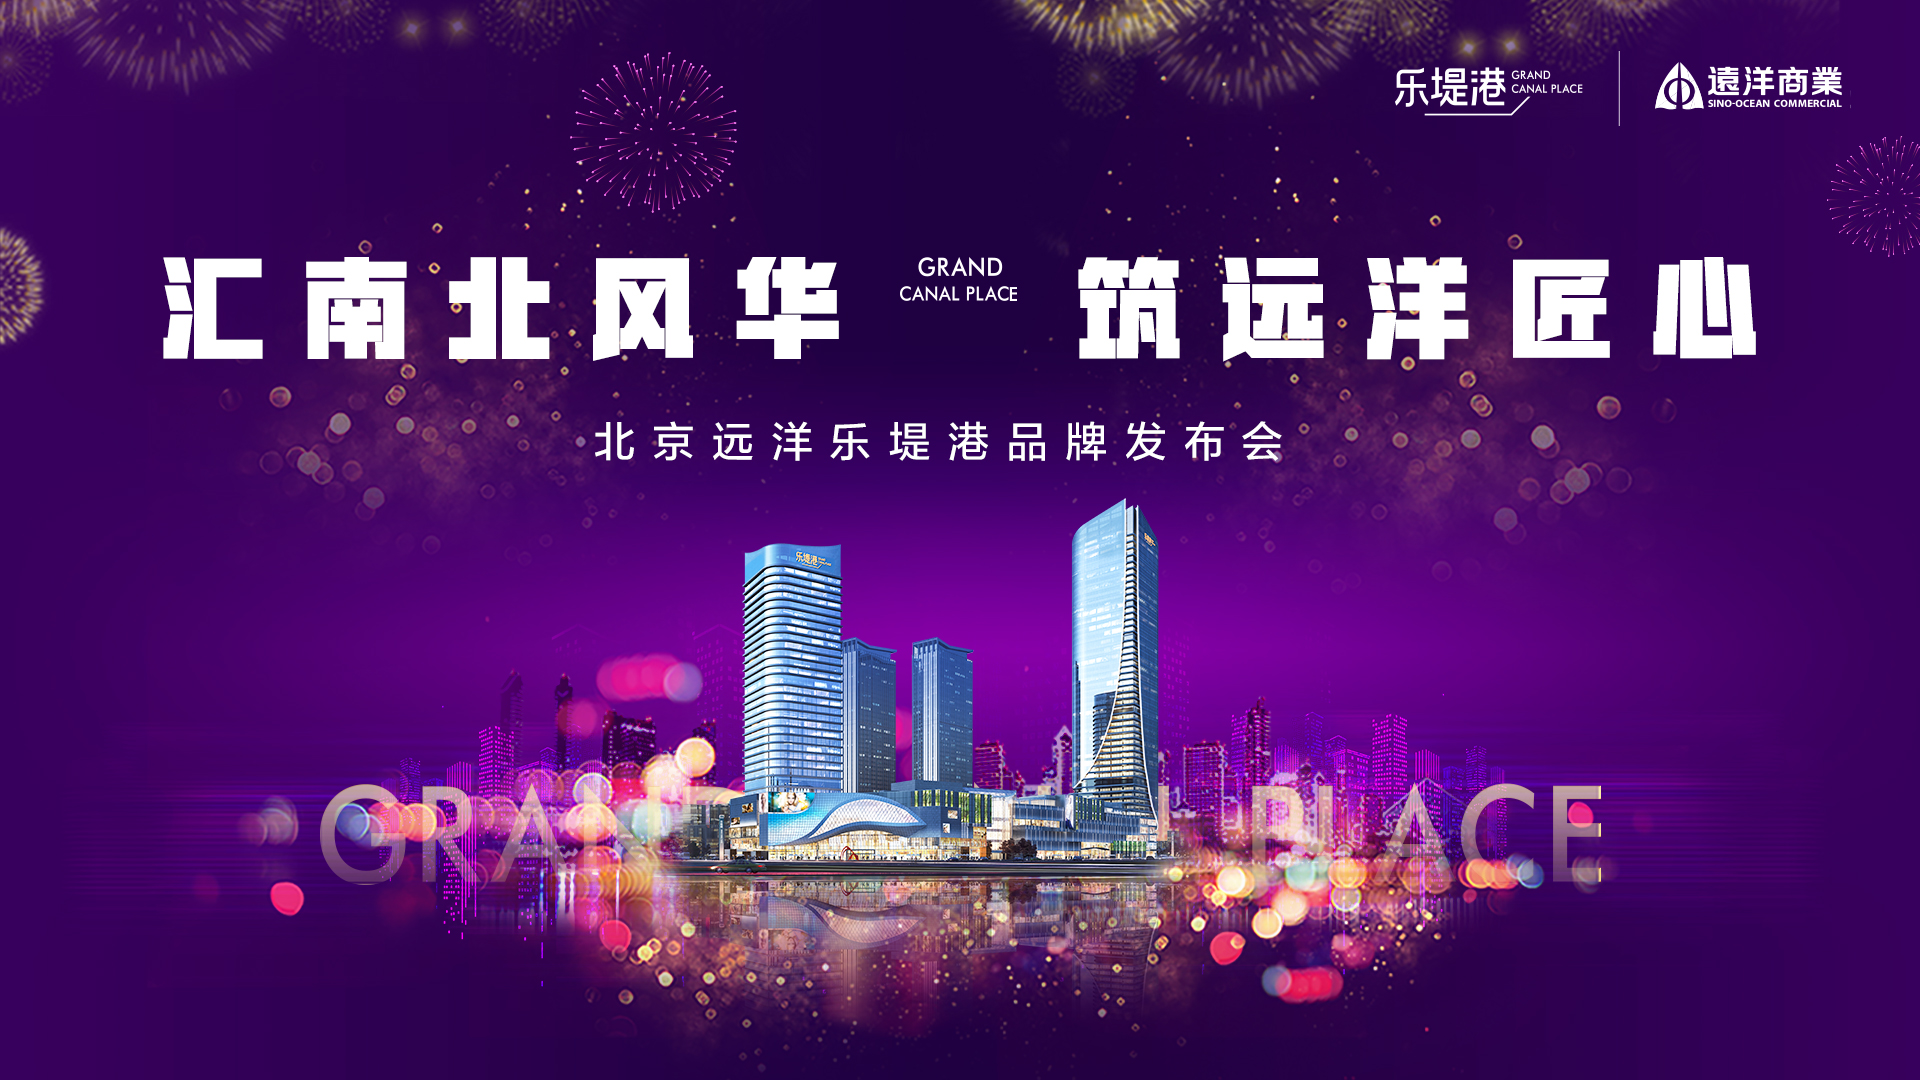 北京远洋乐堤港案名正式发布 成就北京城市副中心新名片-中国网地产